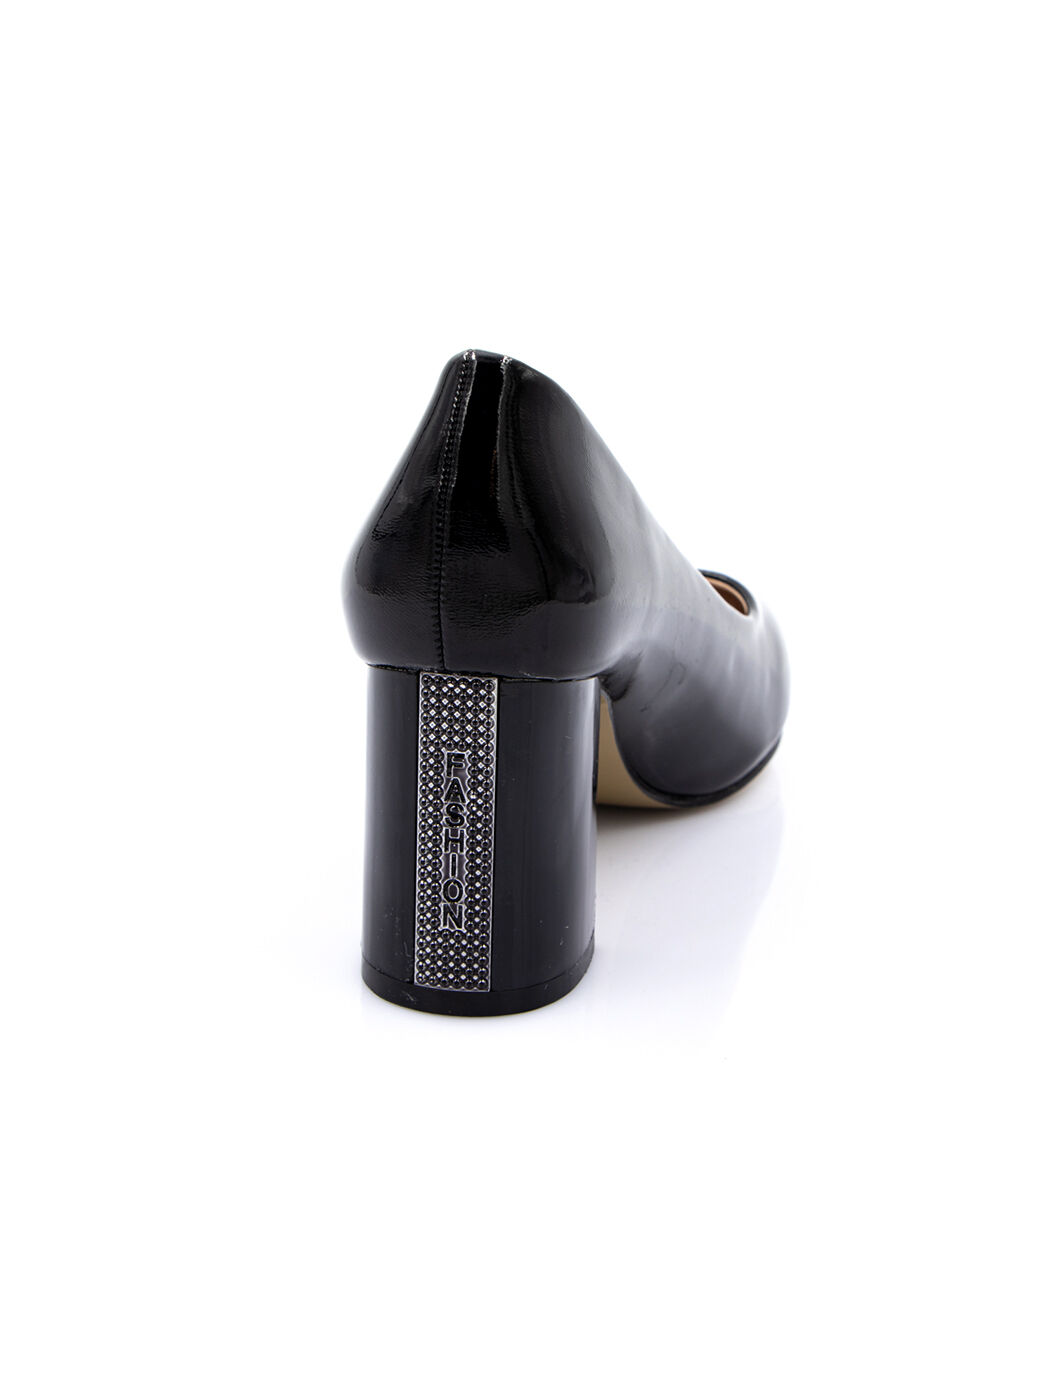 Туфли женские черные искусственный лак каблук устойчивый демисезон от производителя 6M вид 1